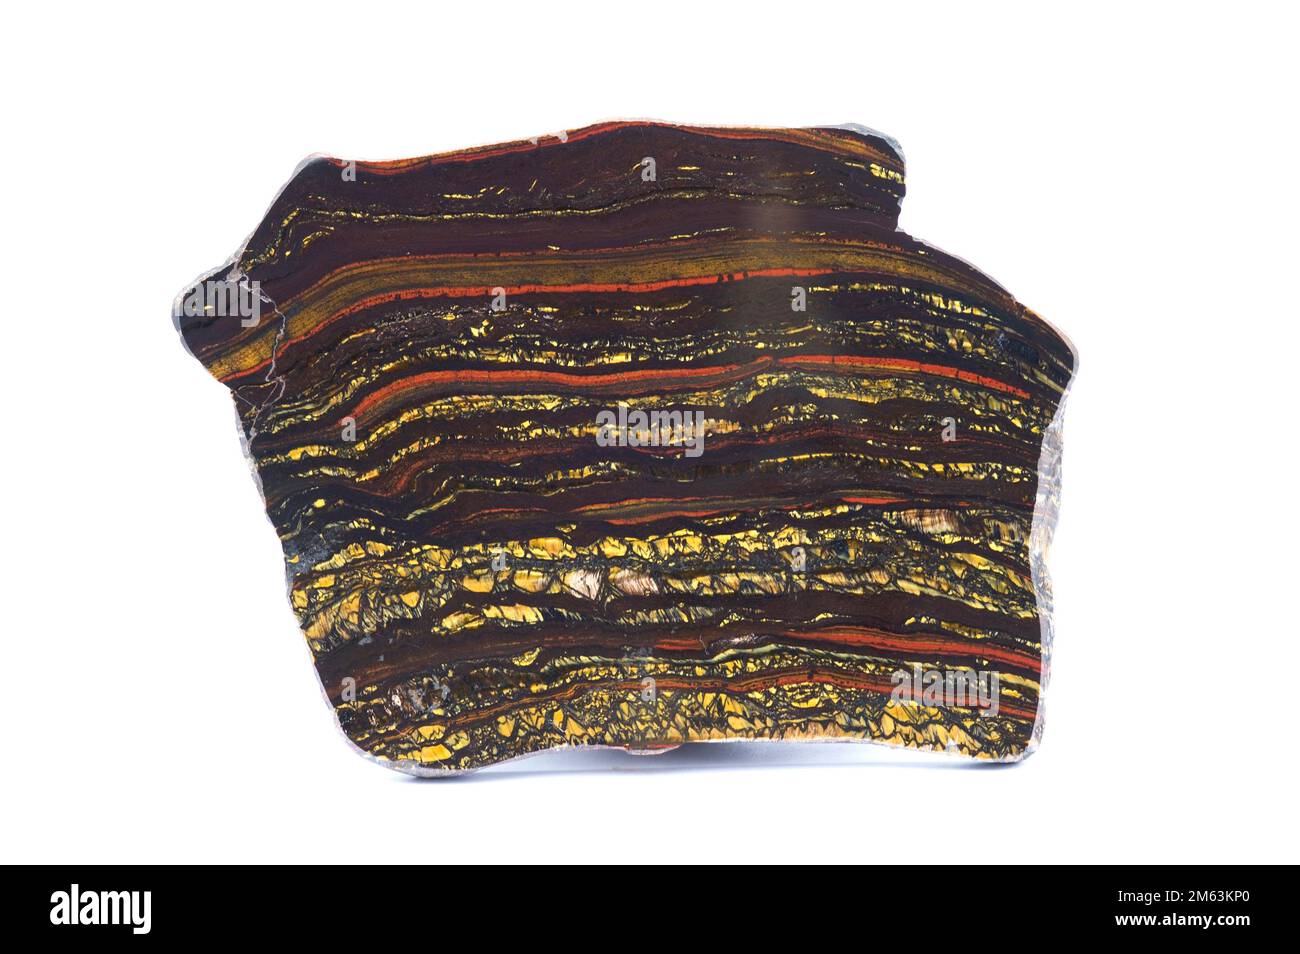 Bänder Iron Formation (BIF) ist ein Sedimentgestein, das aus dünnen Schichten von Eisenoxiden gebildet wird. Diese polierte Probe stammt aus Australien. Stockfoto